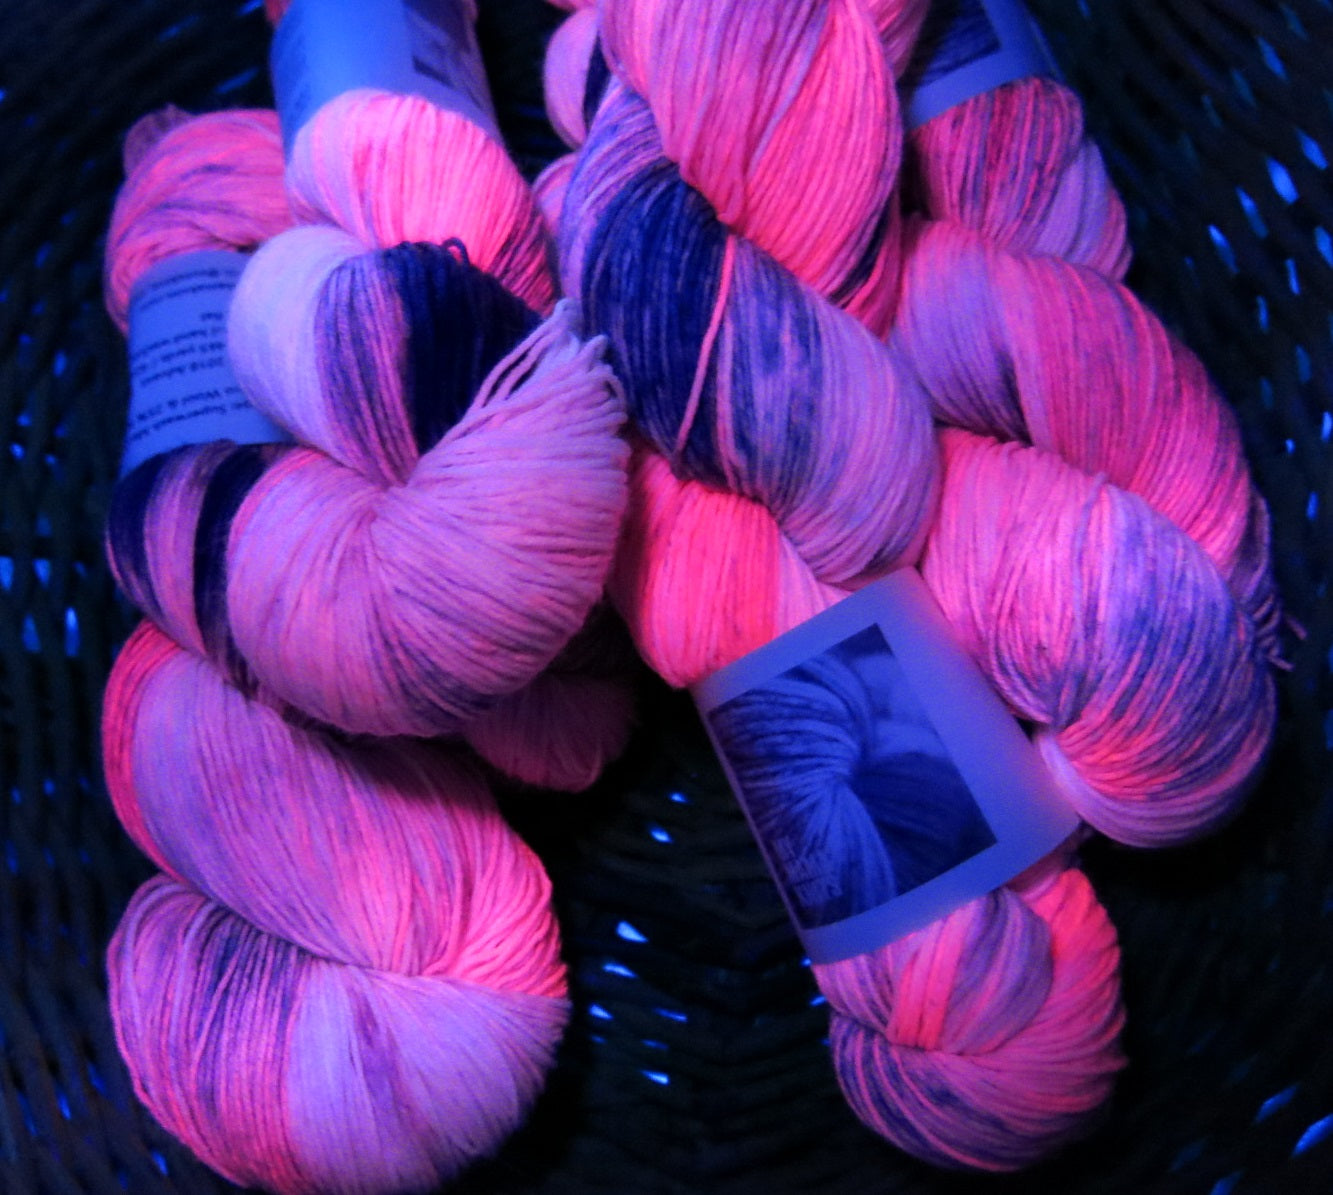 uv reactive pink yarn fluorescing under black light